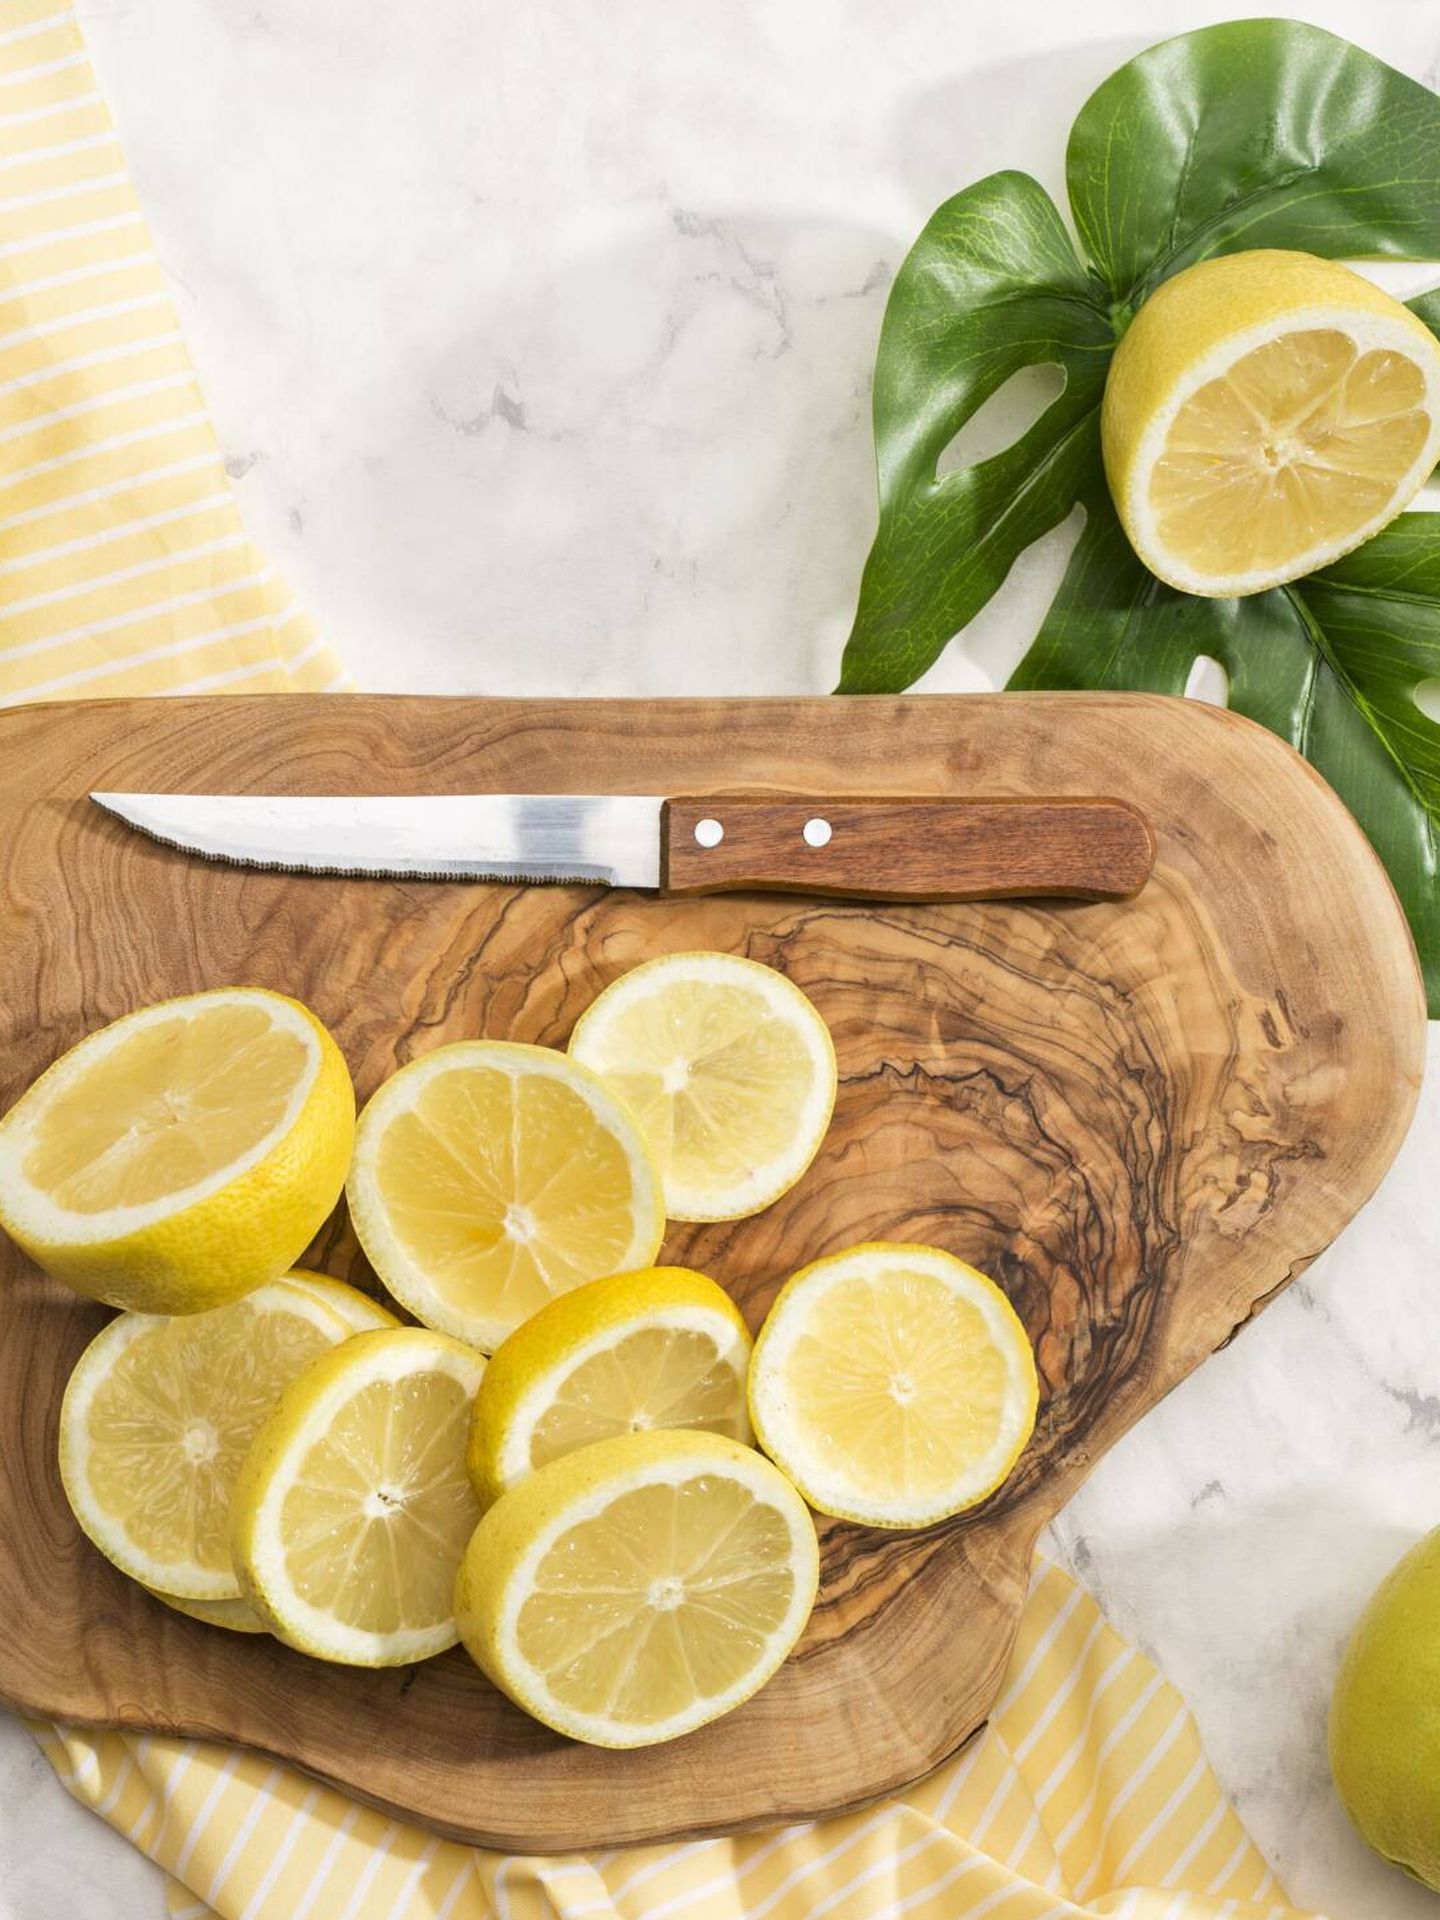 El zumo de limón es otro aliado que ayuda a potenciar la salud de tus plantas. (Freepik)